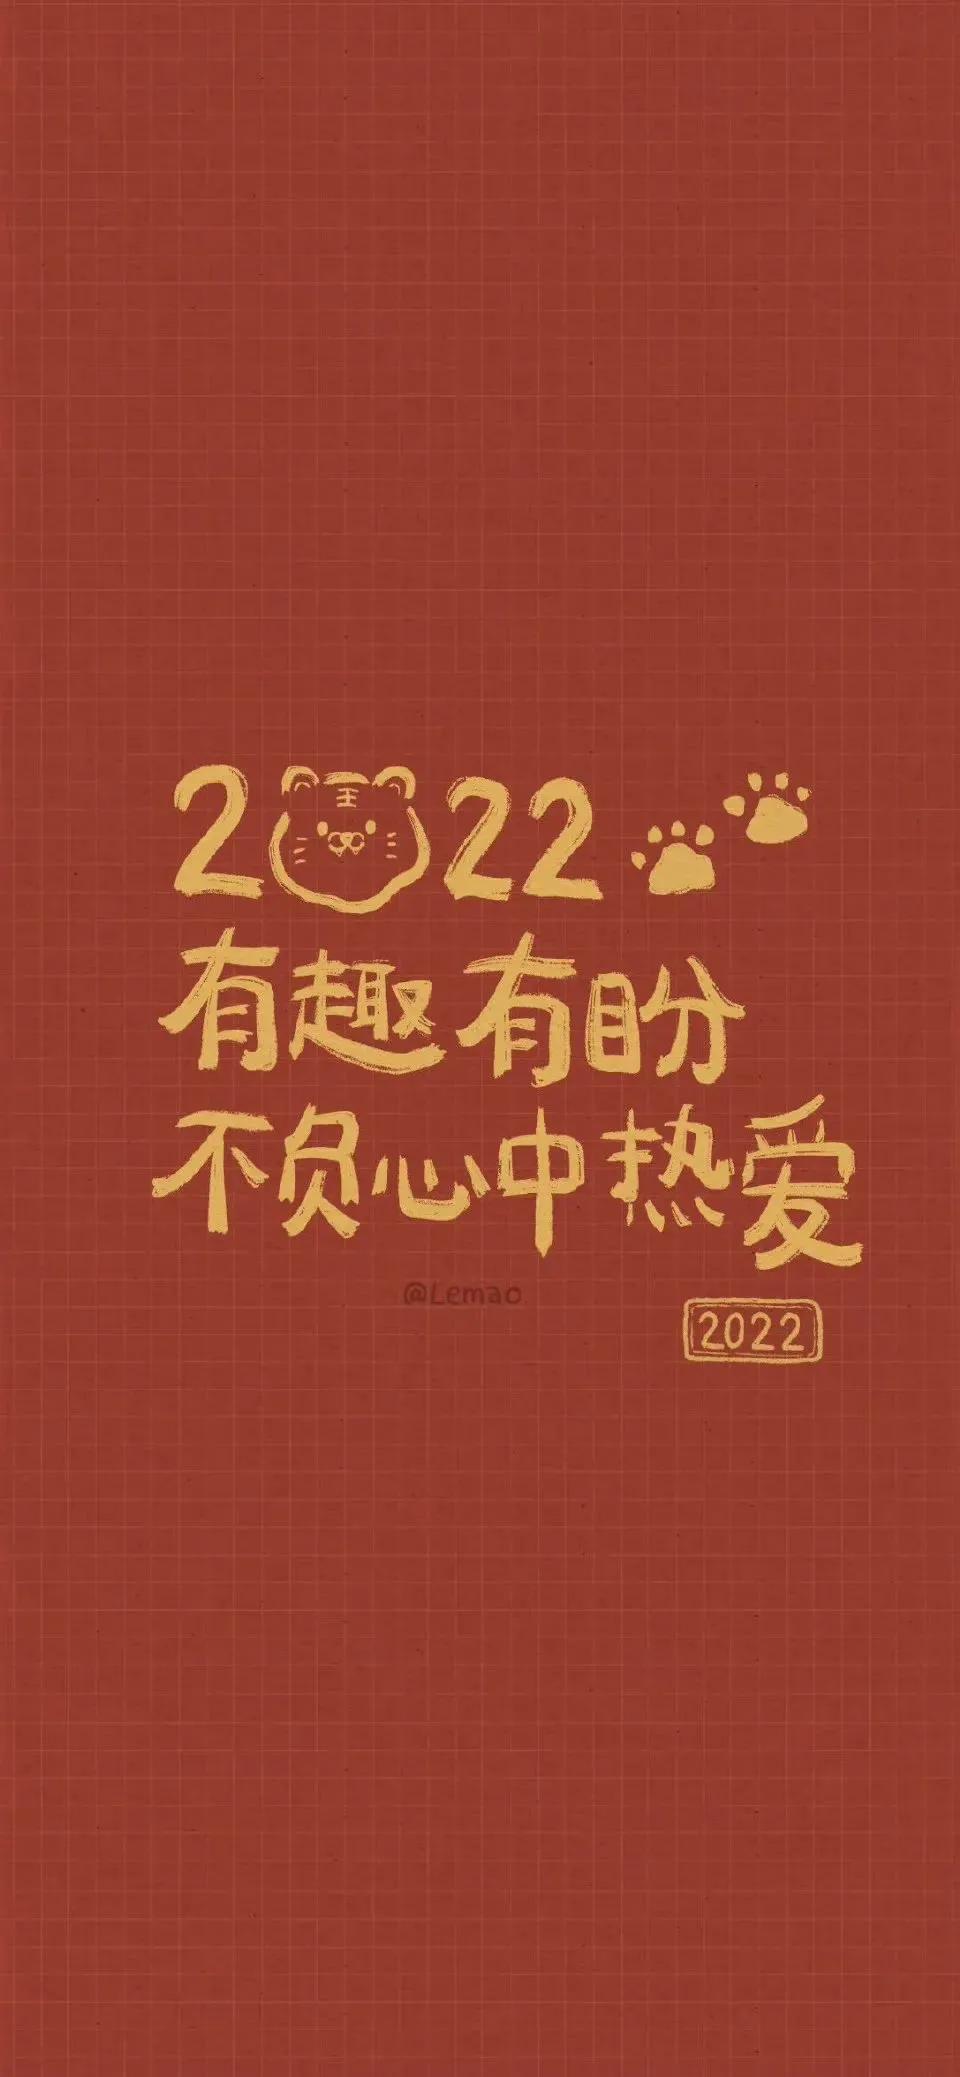 2022新年高清虎年壁纸,春节发朋友圈配图及聊天背景必备,快来收藏